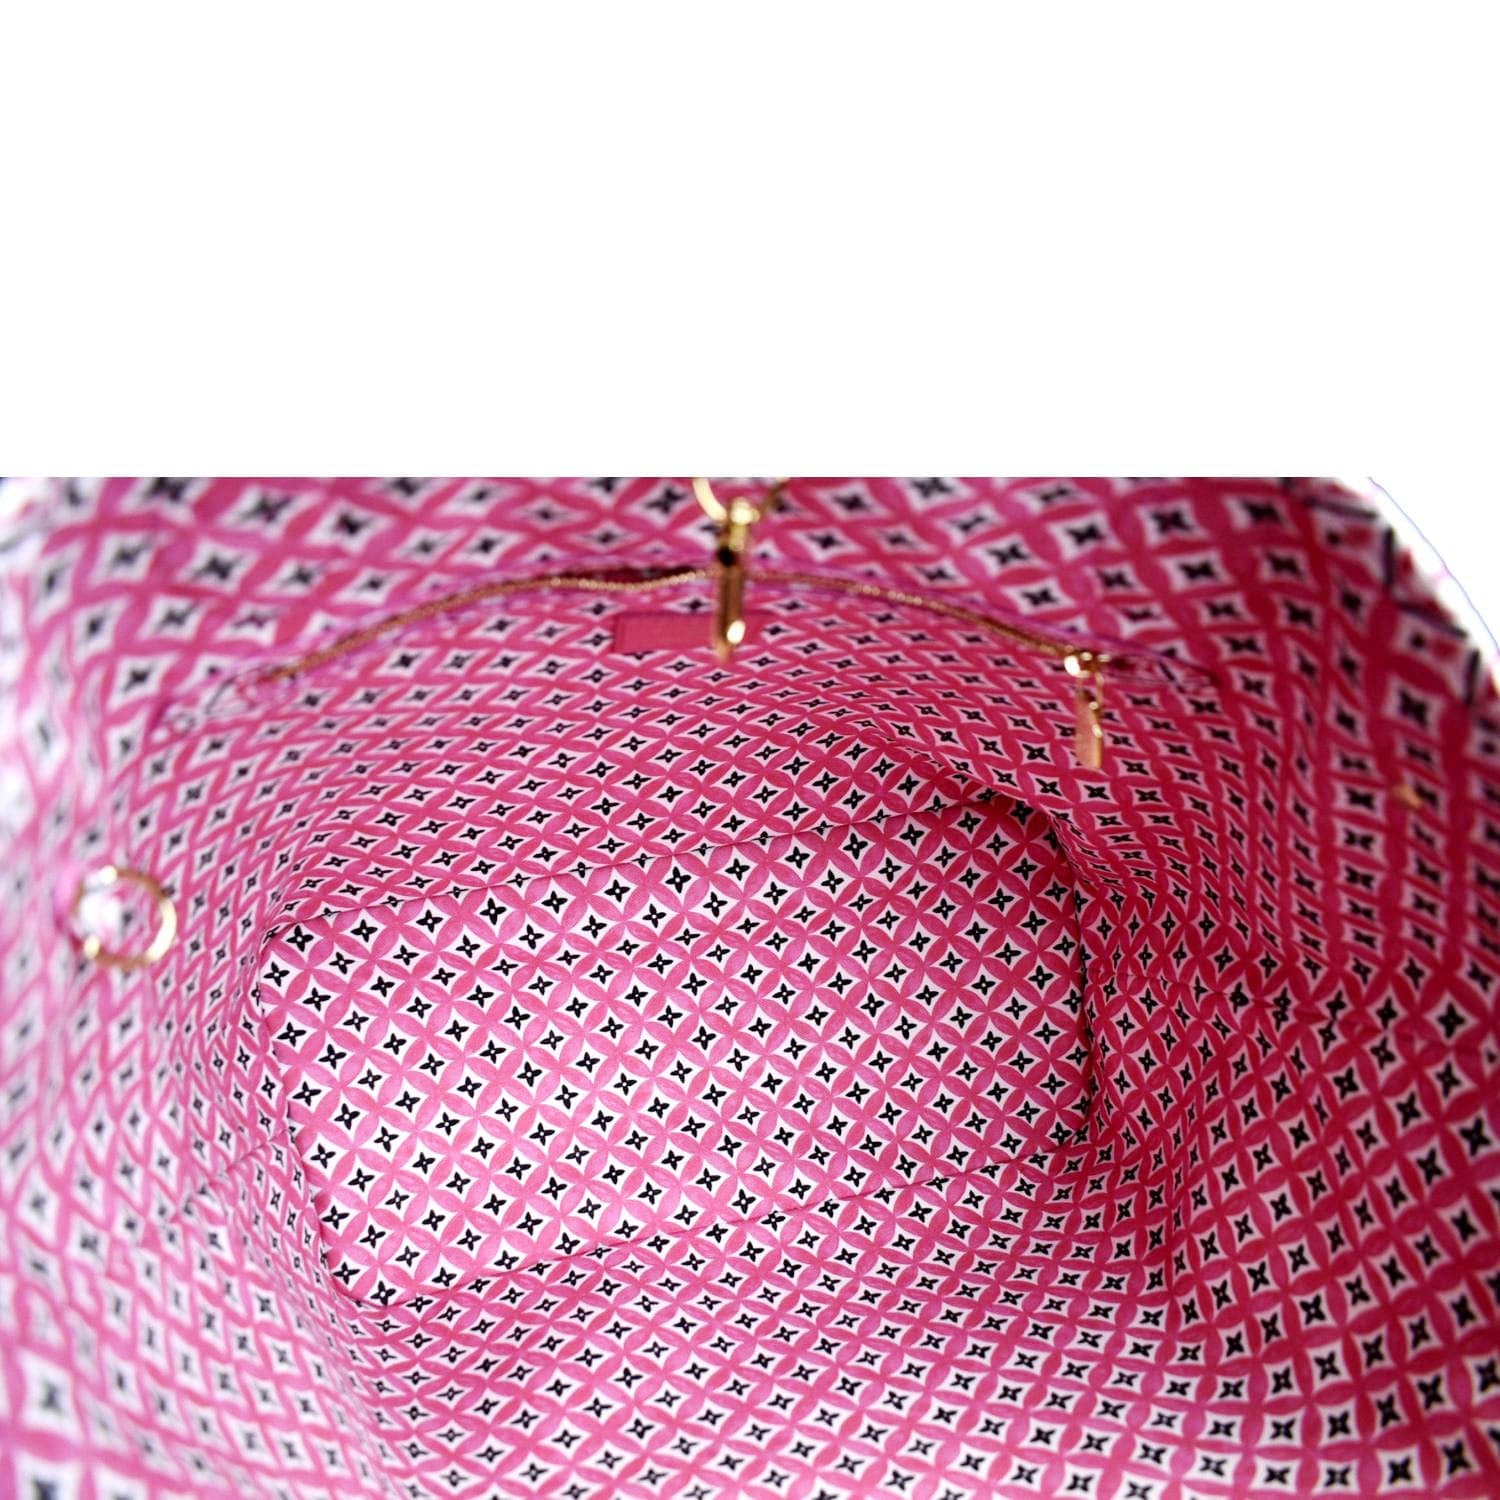 Louis Vuitton Keepall Large Mesh / Monogram Pink